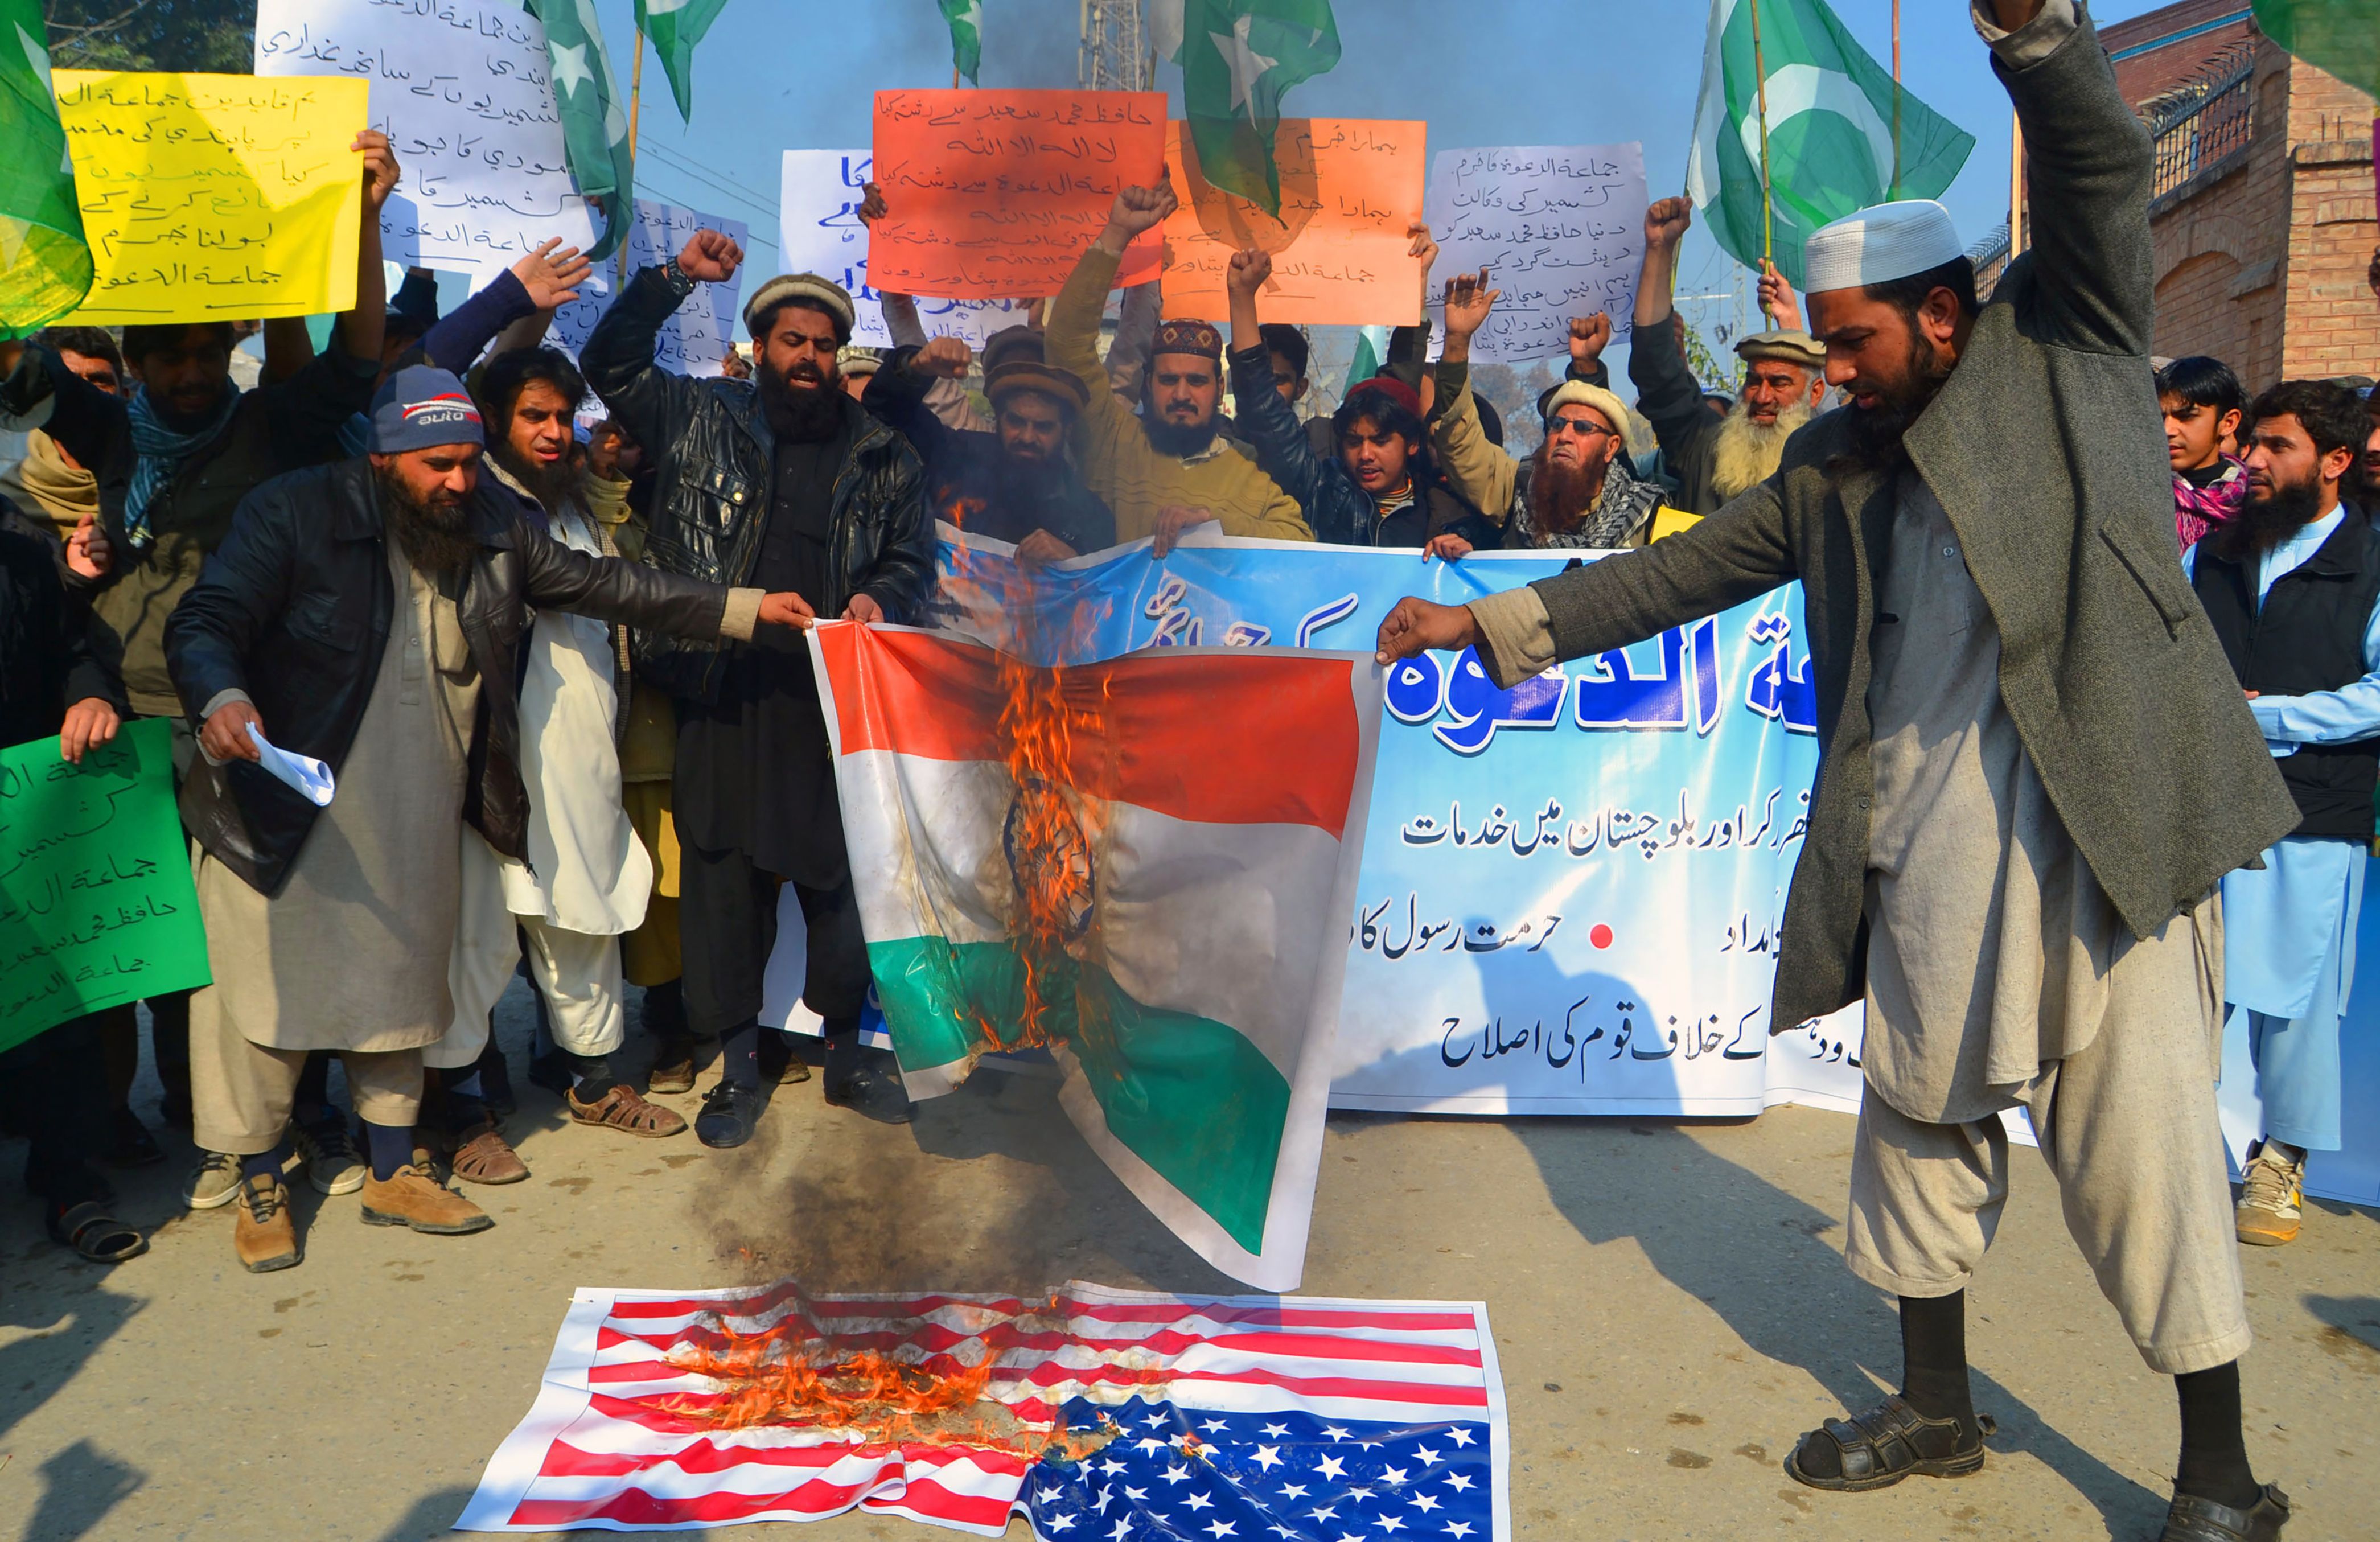 انصار حافظ سعيد زعيم جماعة الدعوة الباكستانية يحرقون علم أمريكا والهند خلال مظاهراتهم